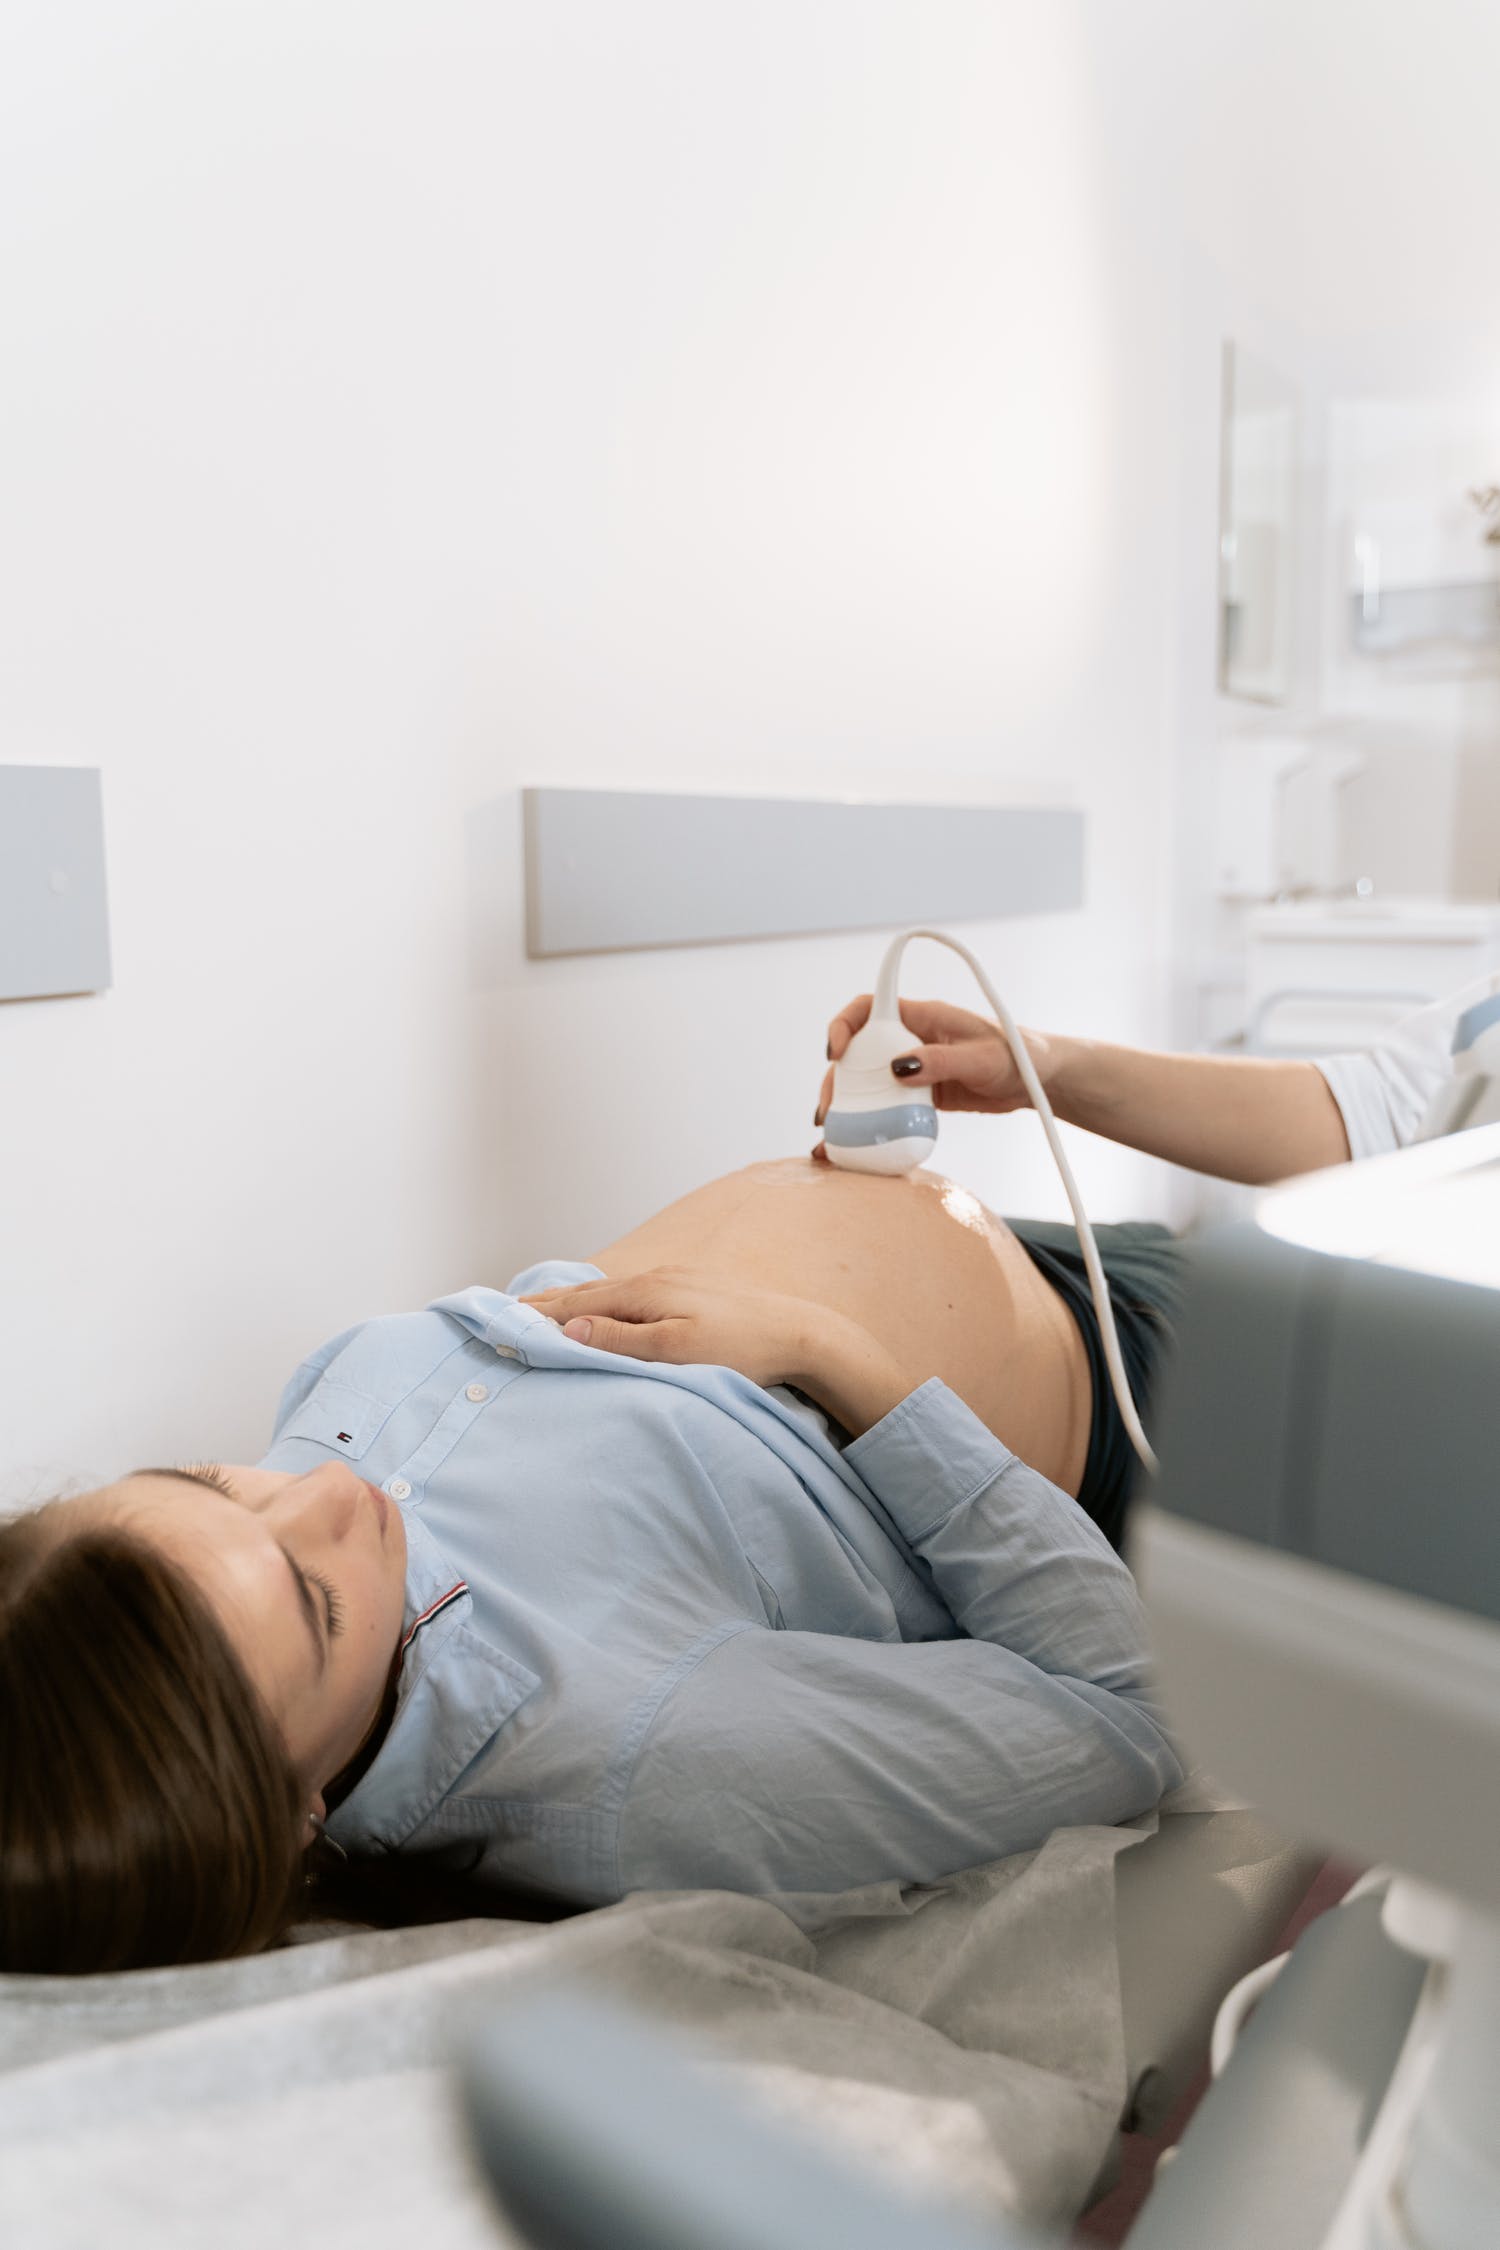 Έγκυος σε δίδυμα; Όλα όσα πρέπει να γνωρίζεις για μια ασφαλή εγκυμοσύνη